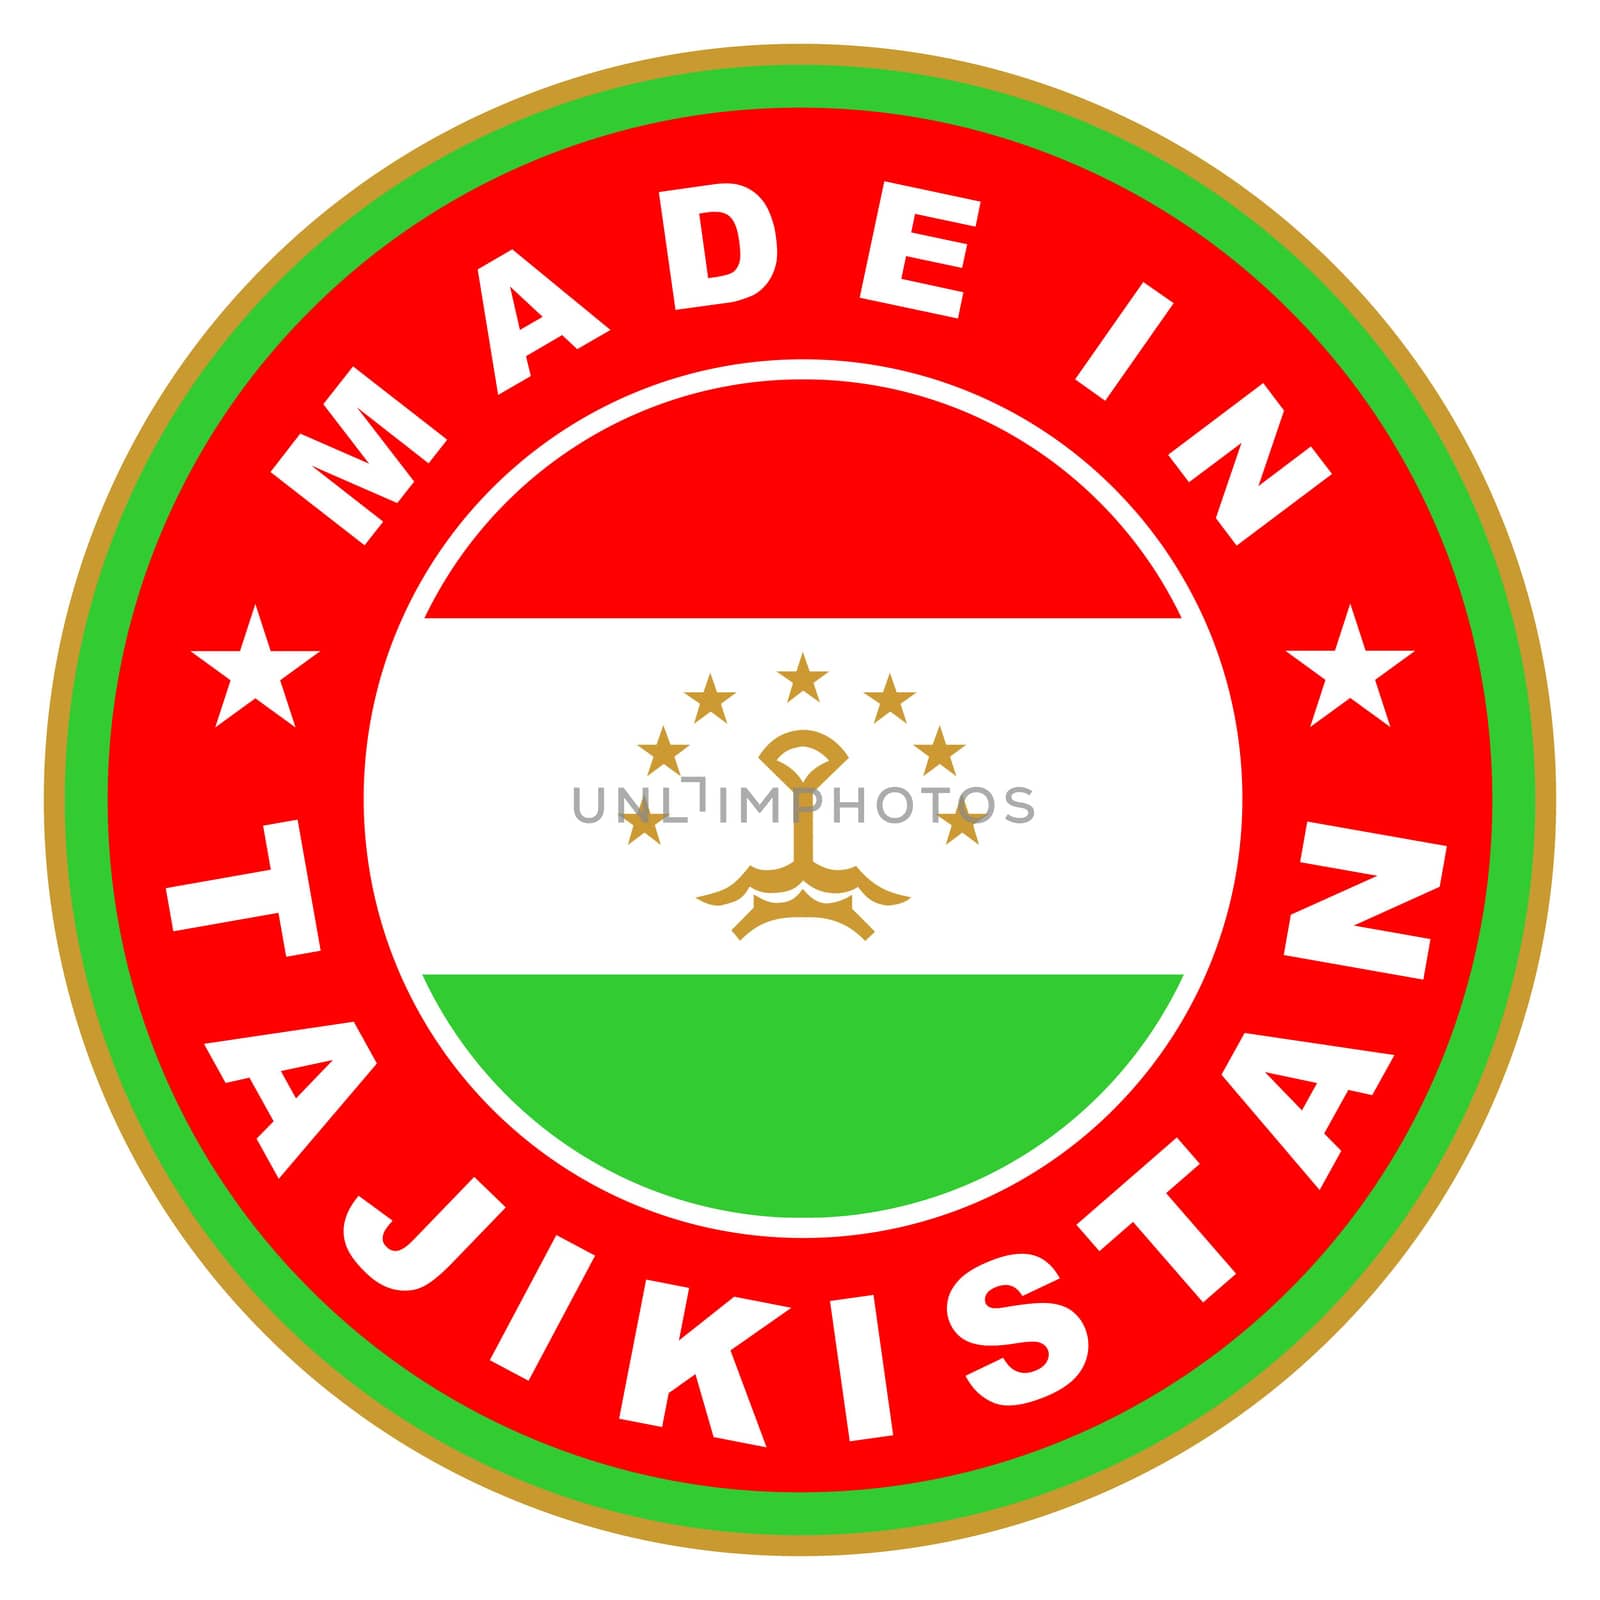 made in tajikistan by tony4urban